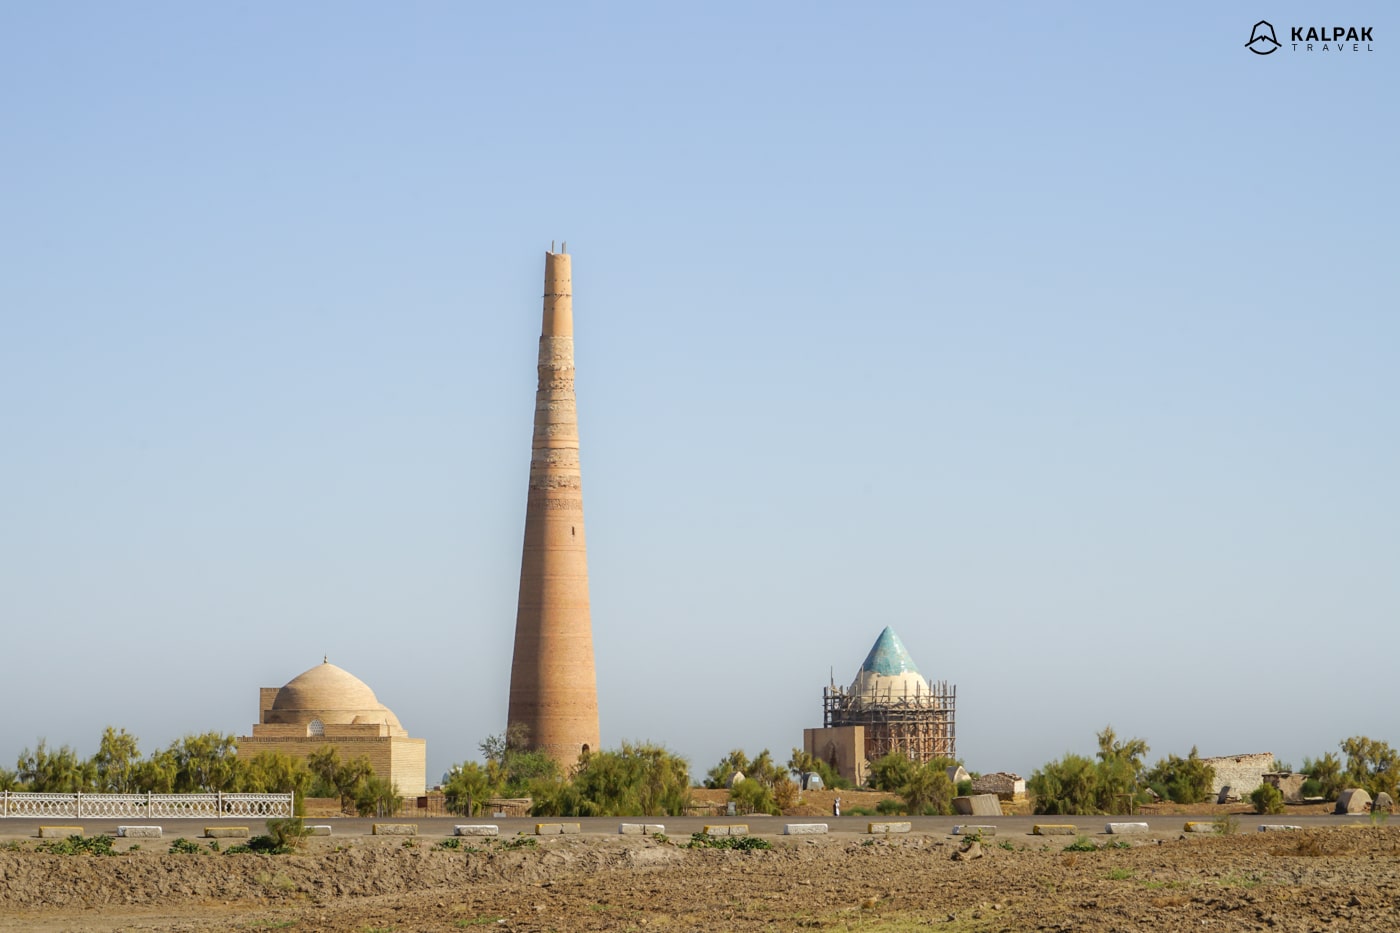 Highlights of Kunya Urgench in Turkmenistan